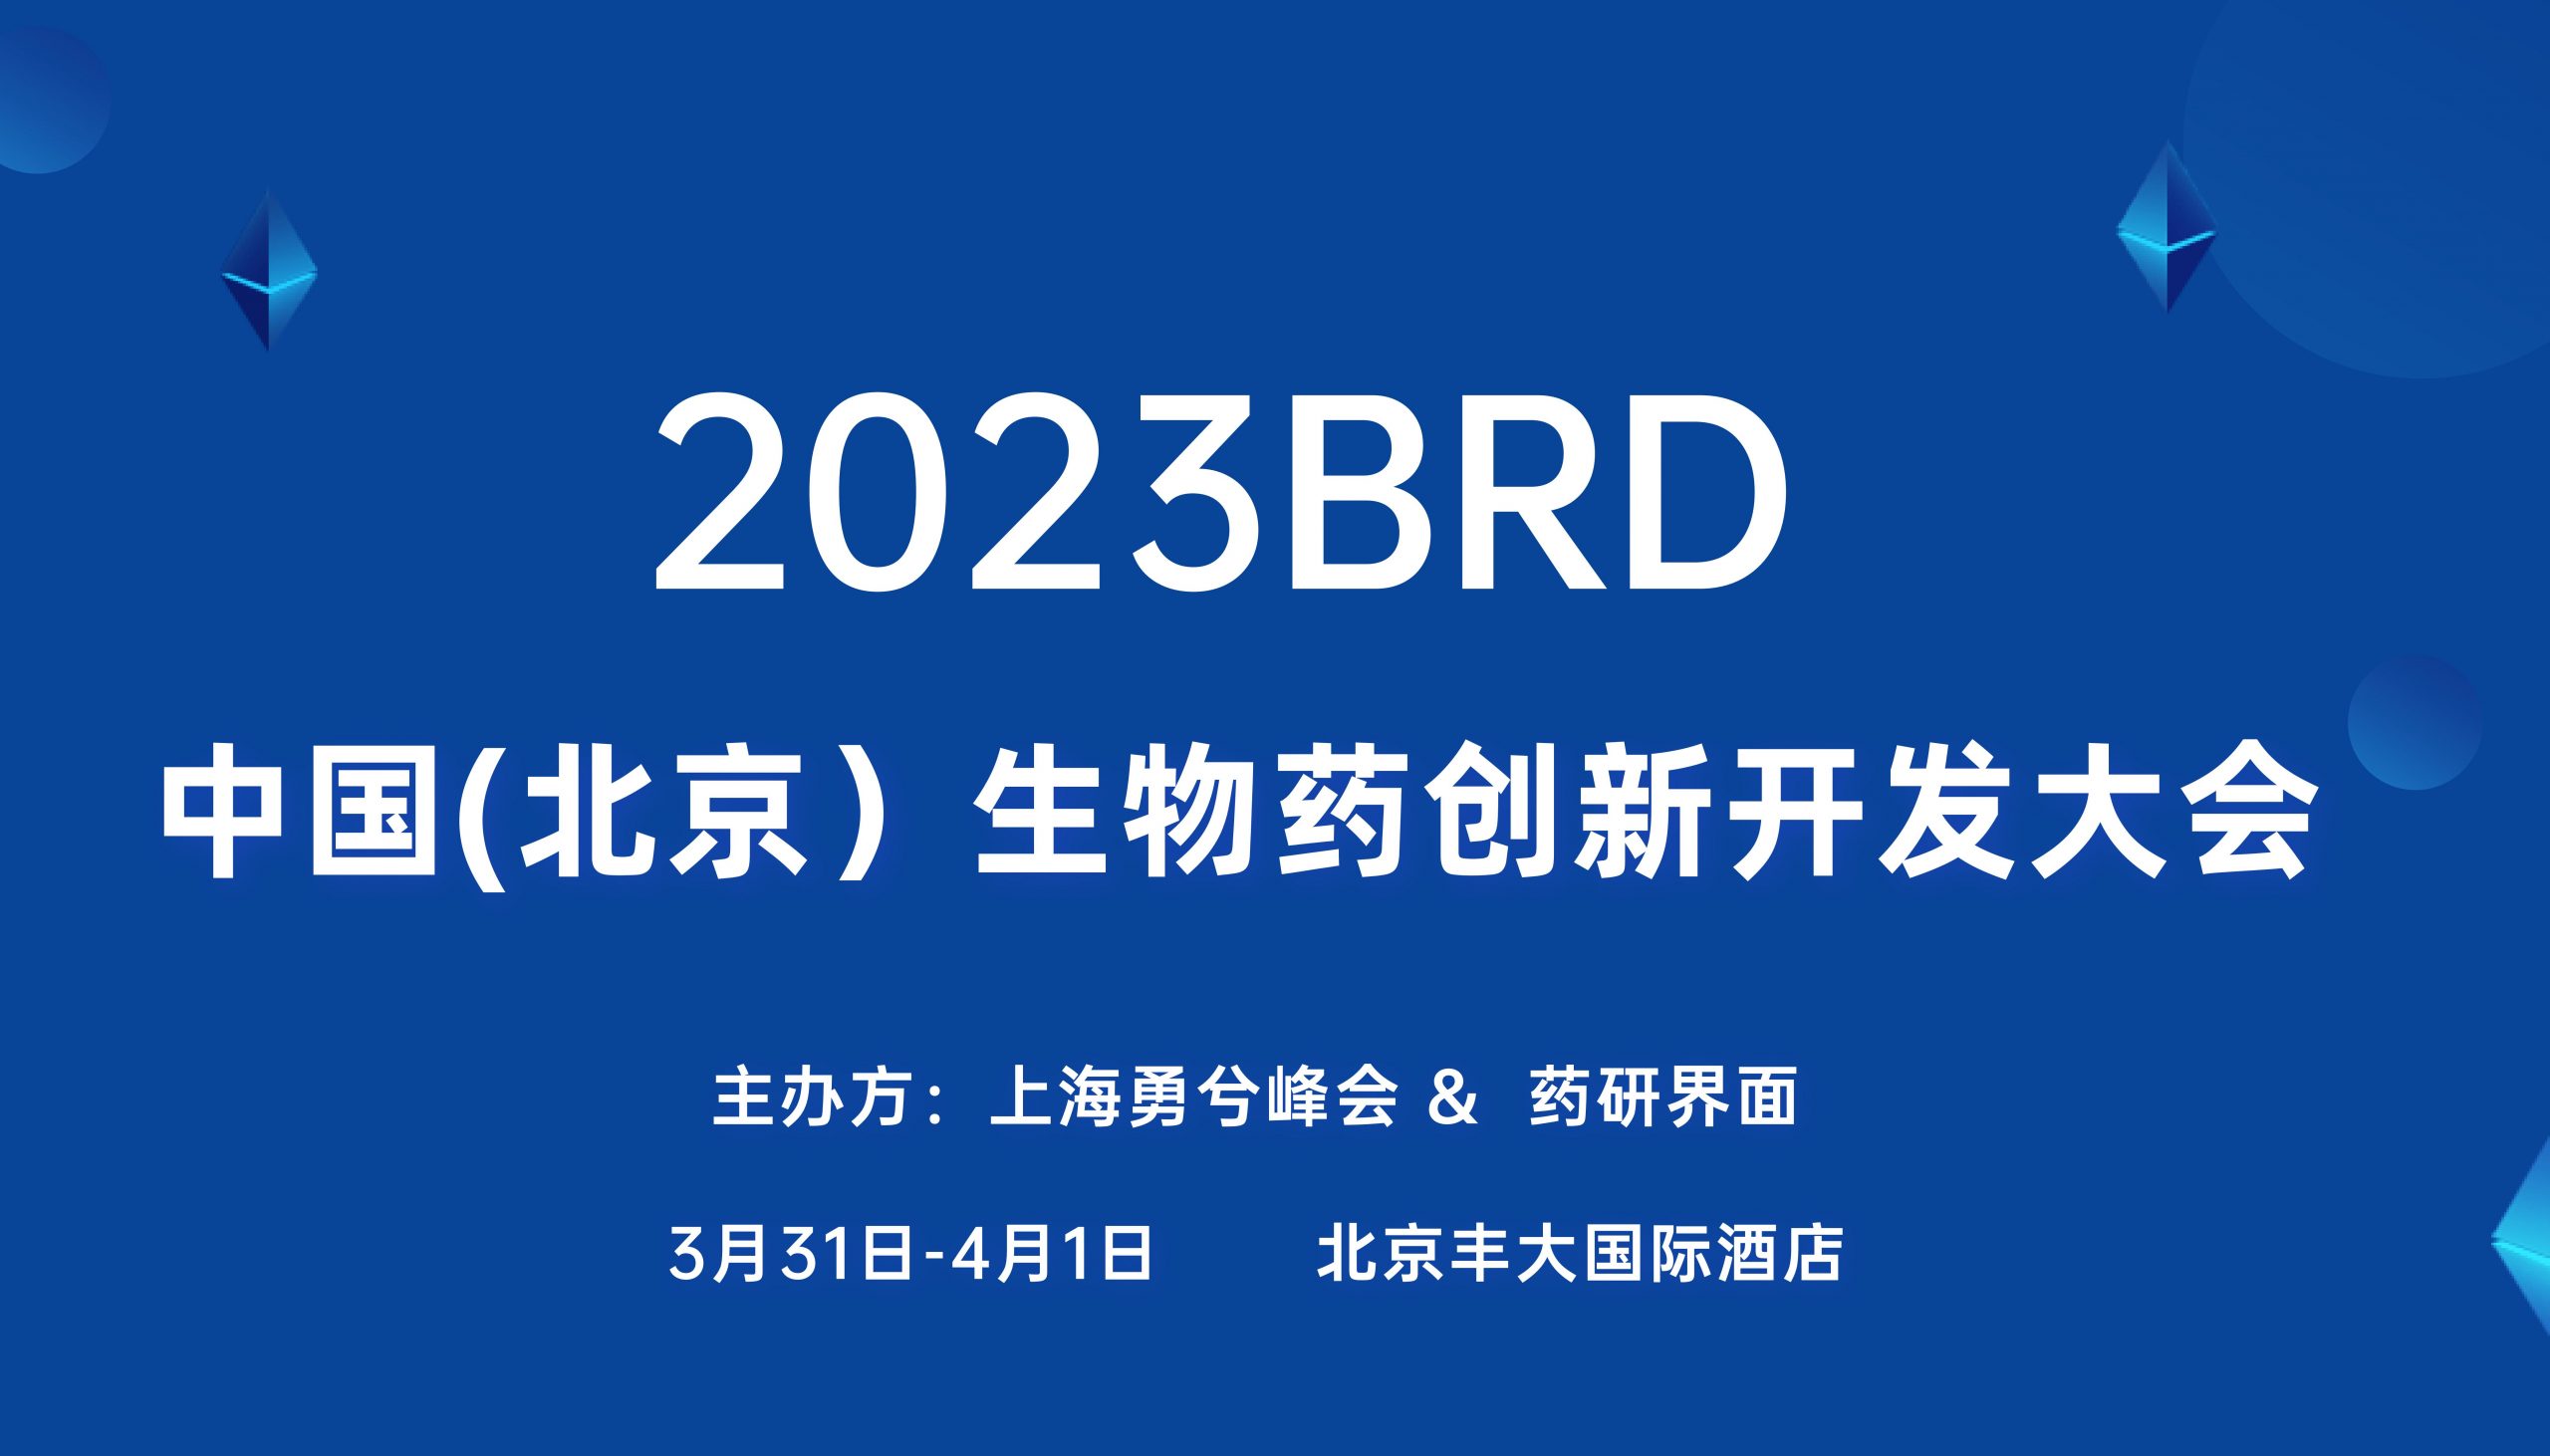  展会邀请| 福流生物邀您参加2023BRD中国(北京)生物药创新开发大会